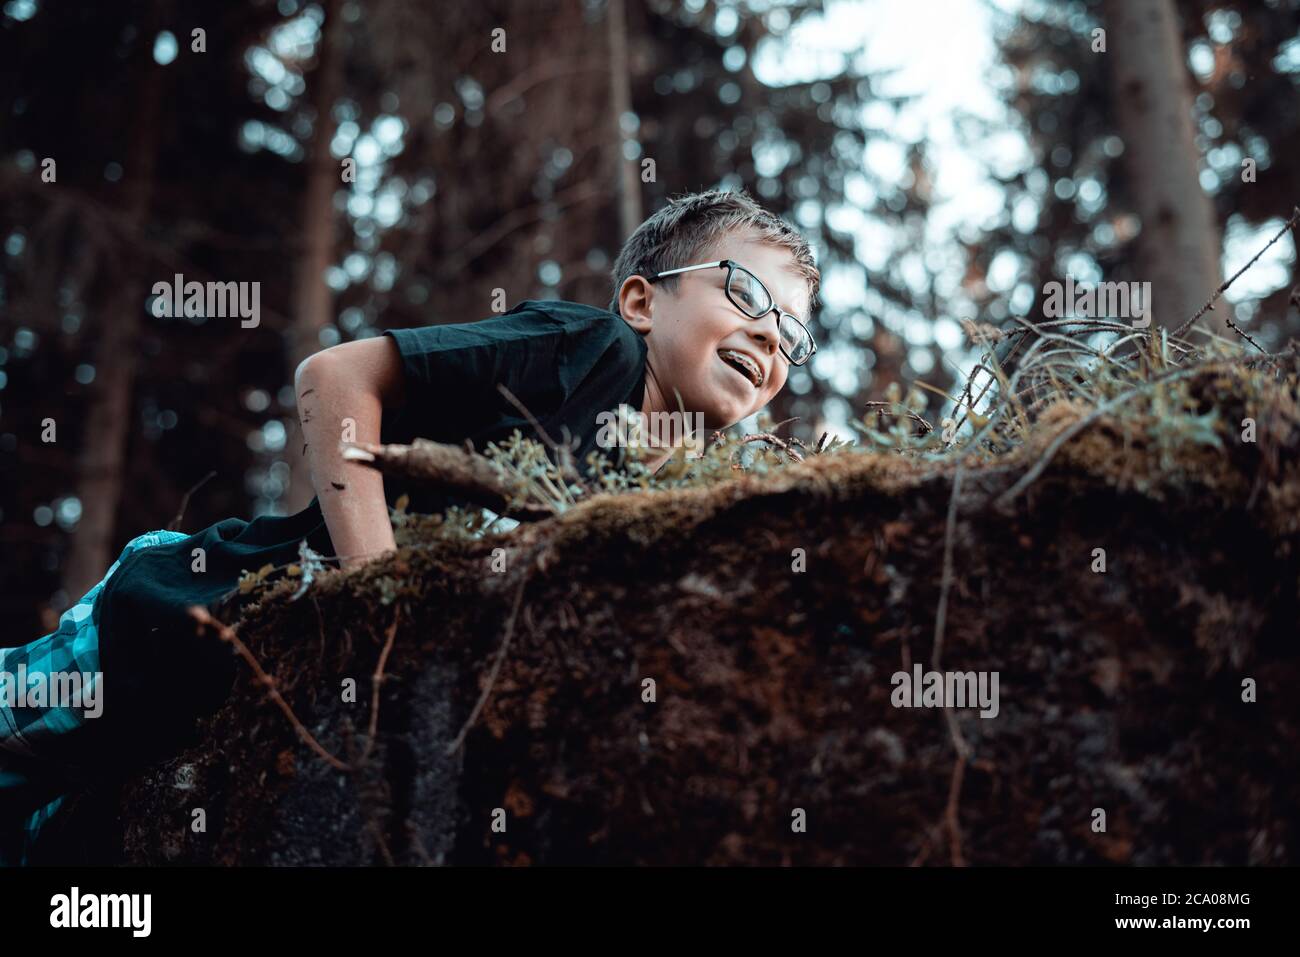 De joven adolescente feliz jugando en el bosque Foto de stock